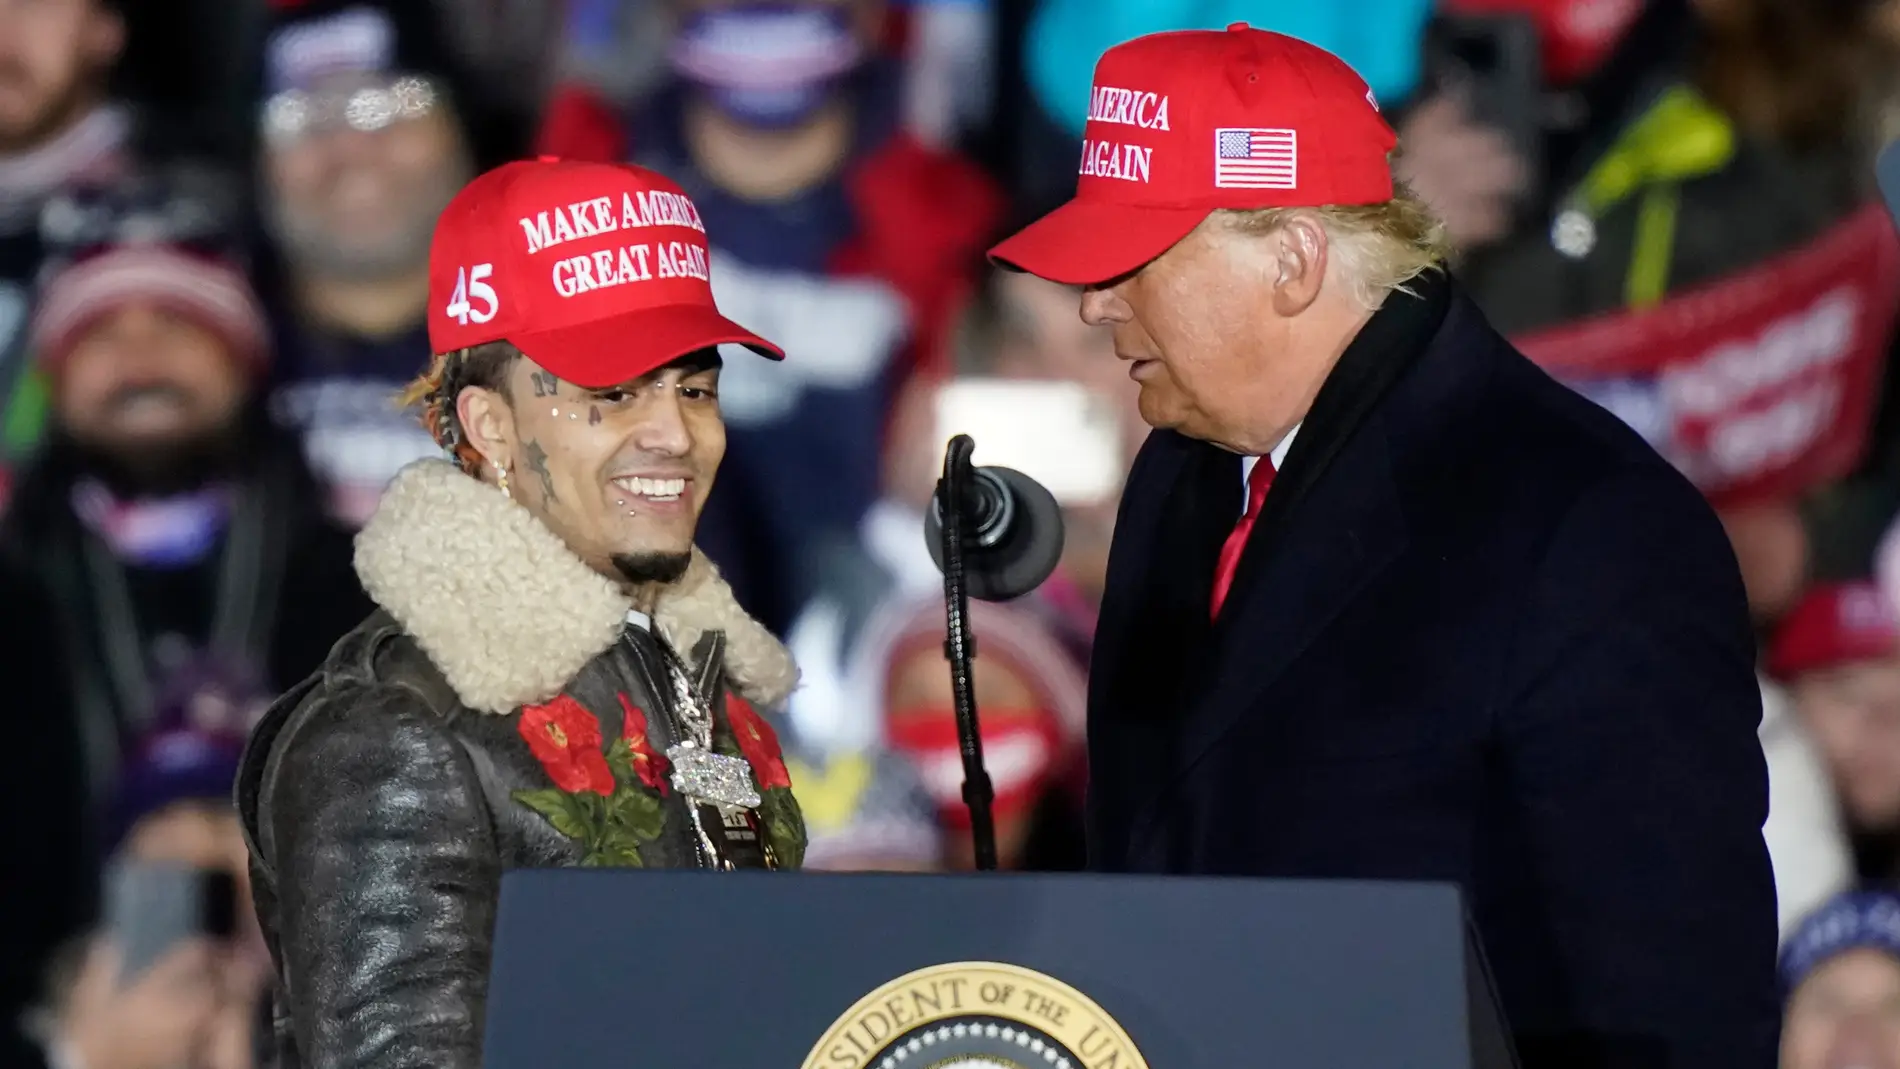 El rapero Lil Pump acude a uno de los mítines finales de campaña de Donald Trump